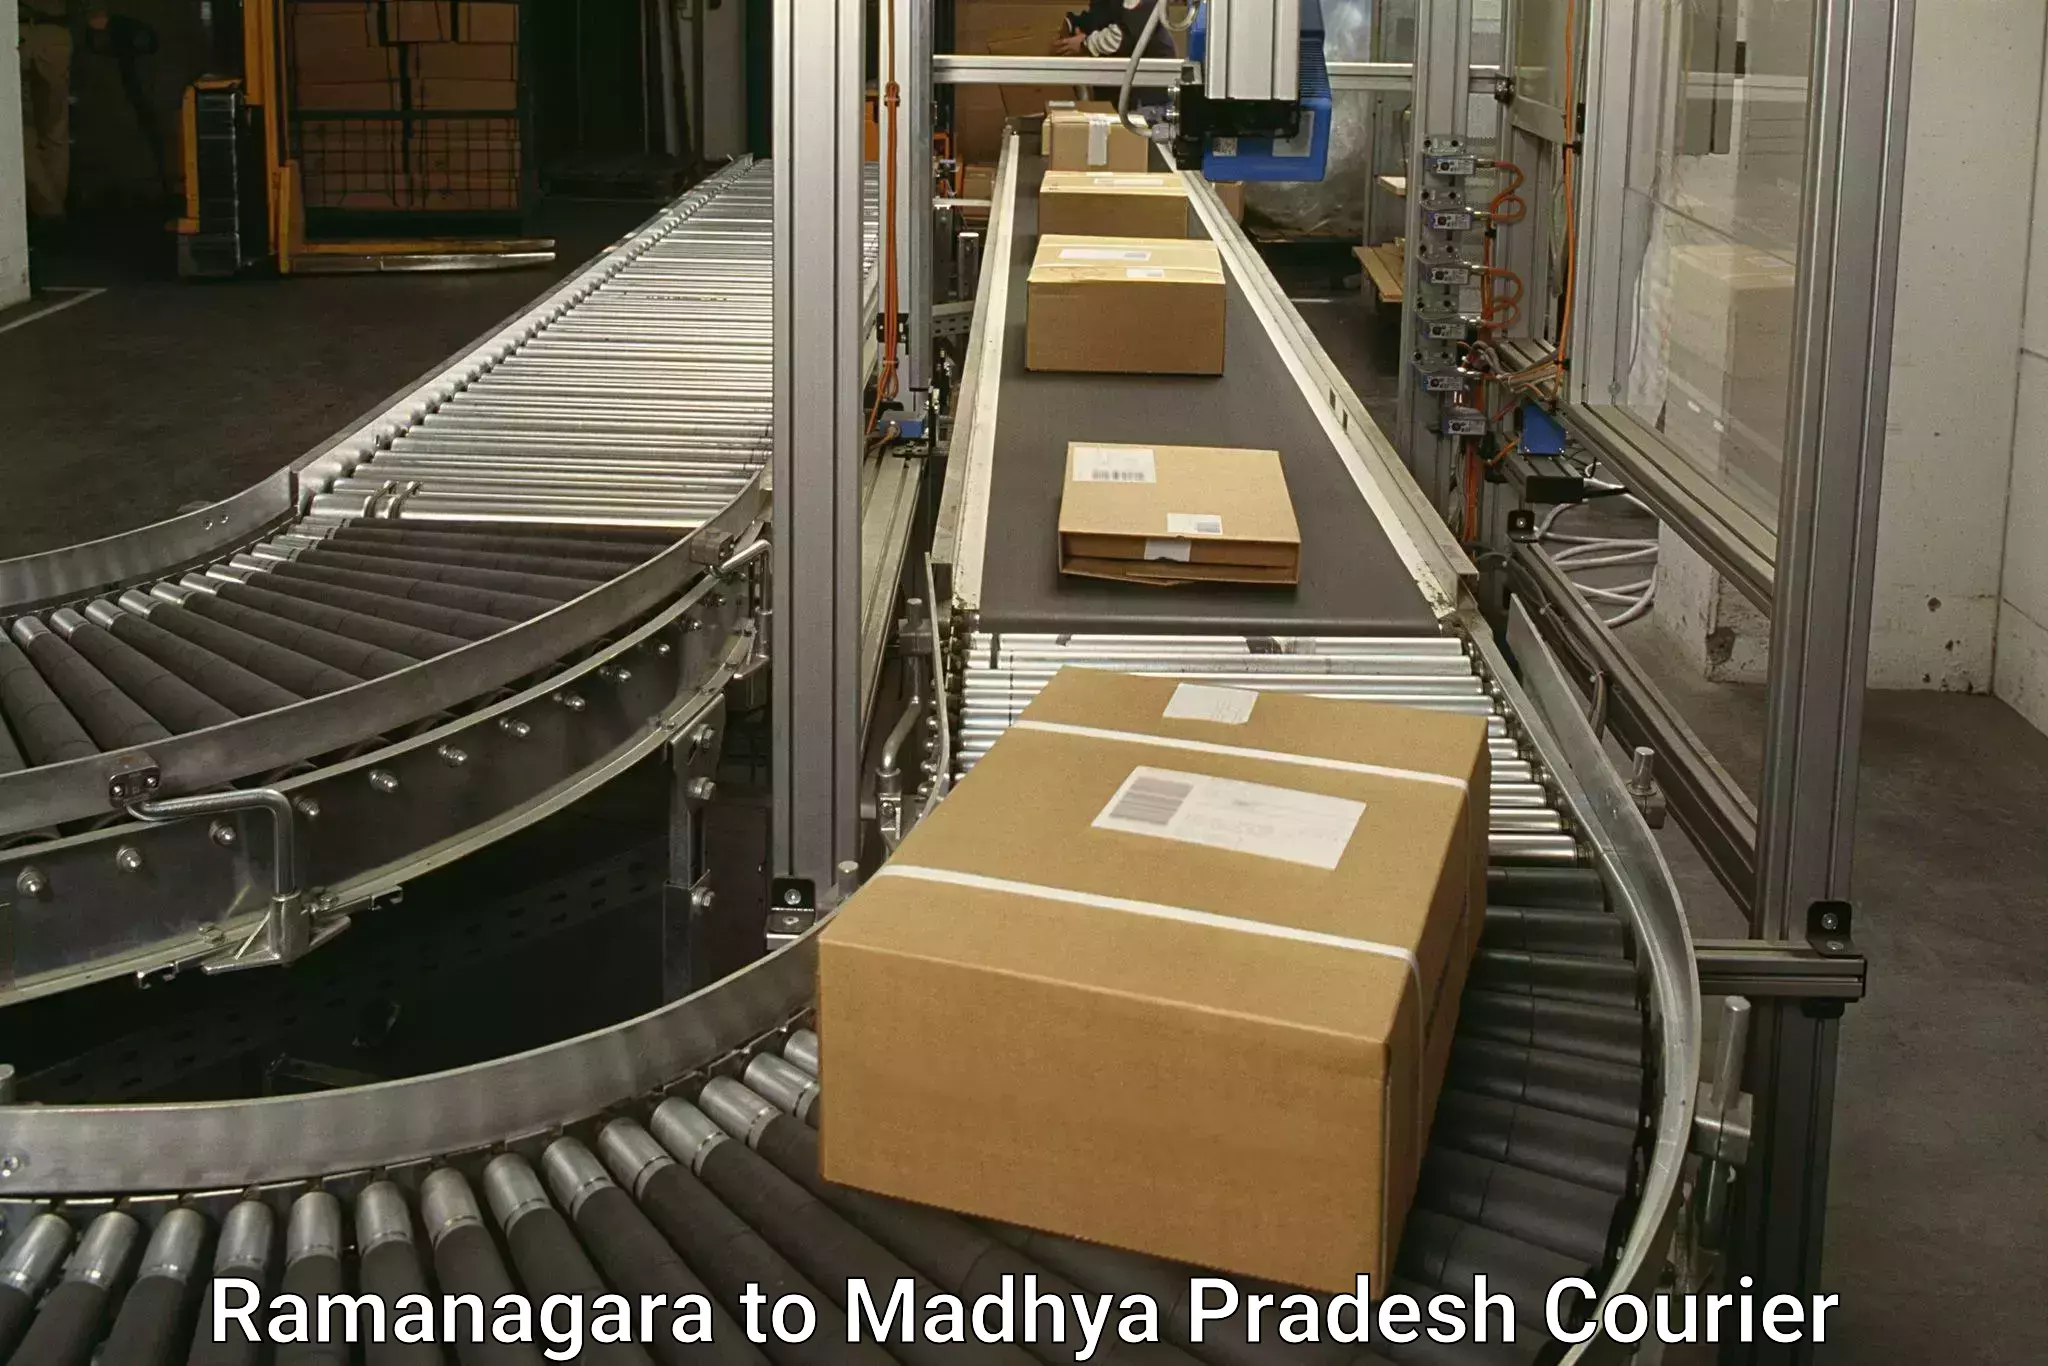 High-performance logistics Ramanagara to Shahpura Dindori